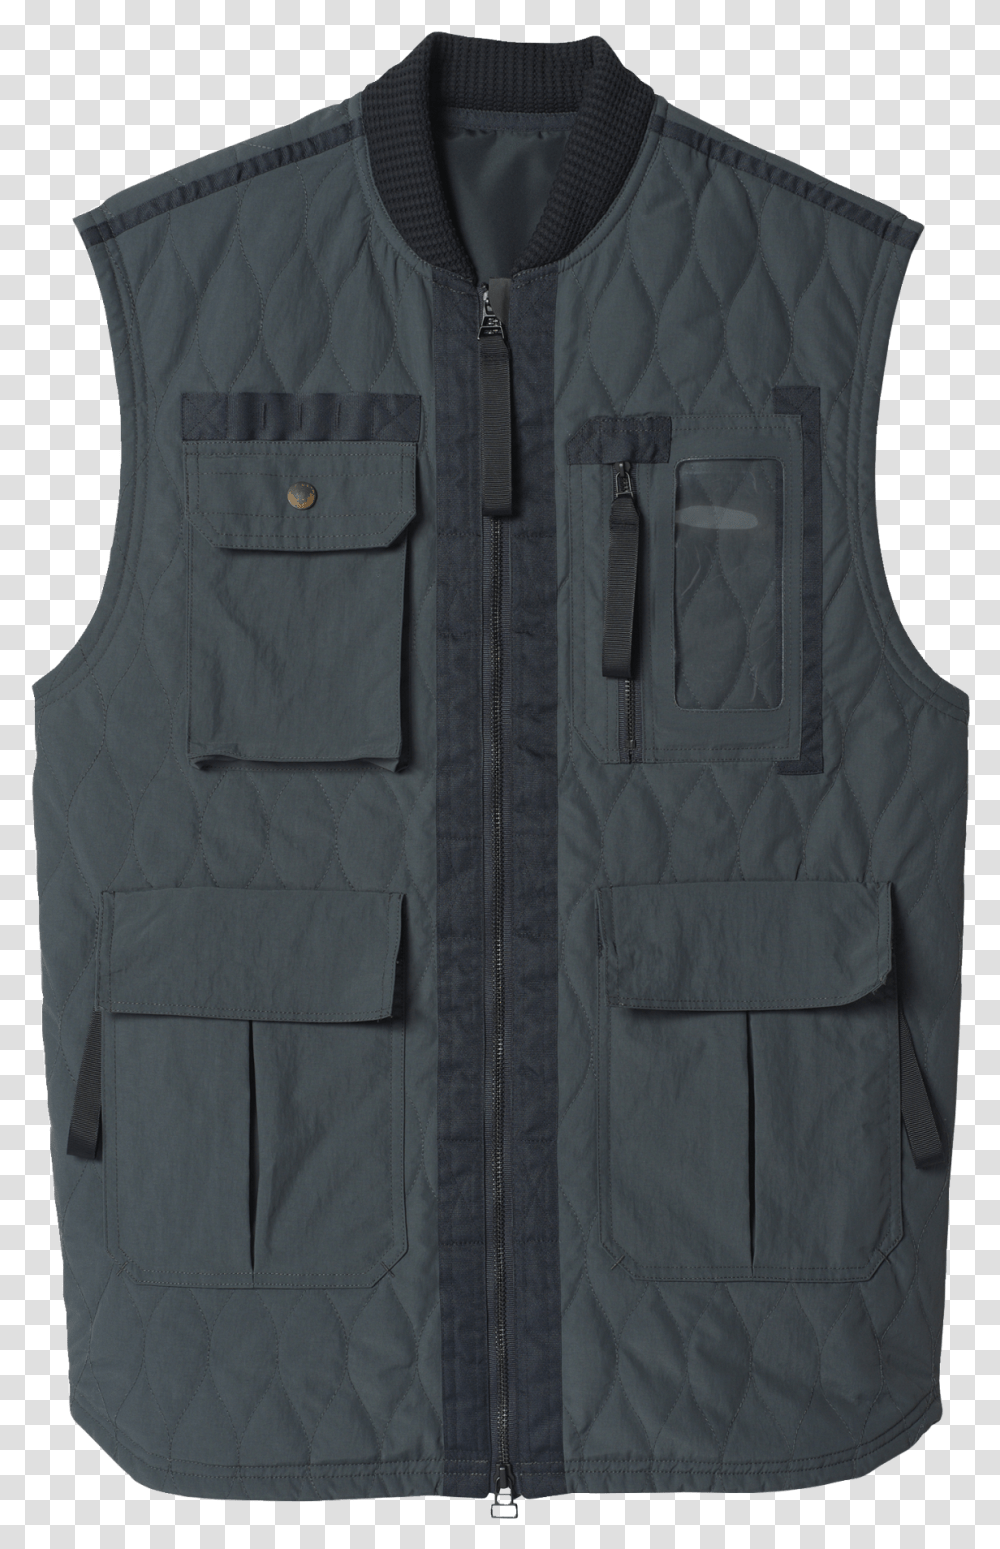 Vest Clipart Sweater Vest, Clothing, Apparel, Lifejacket Transparent Png